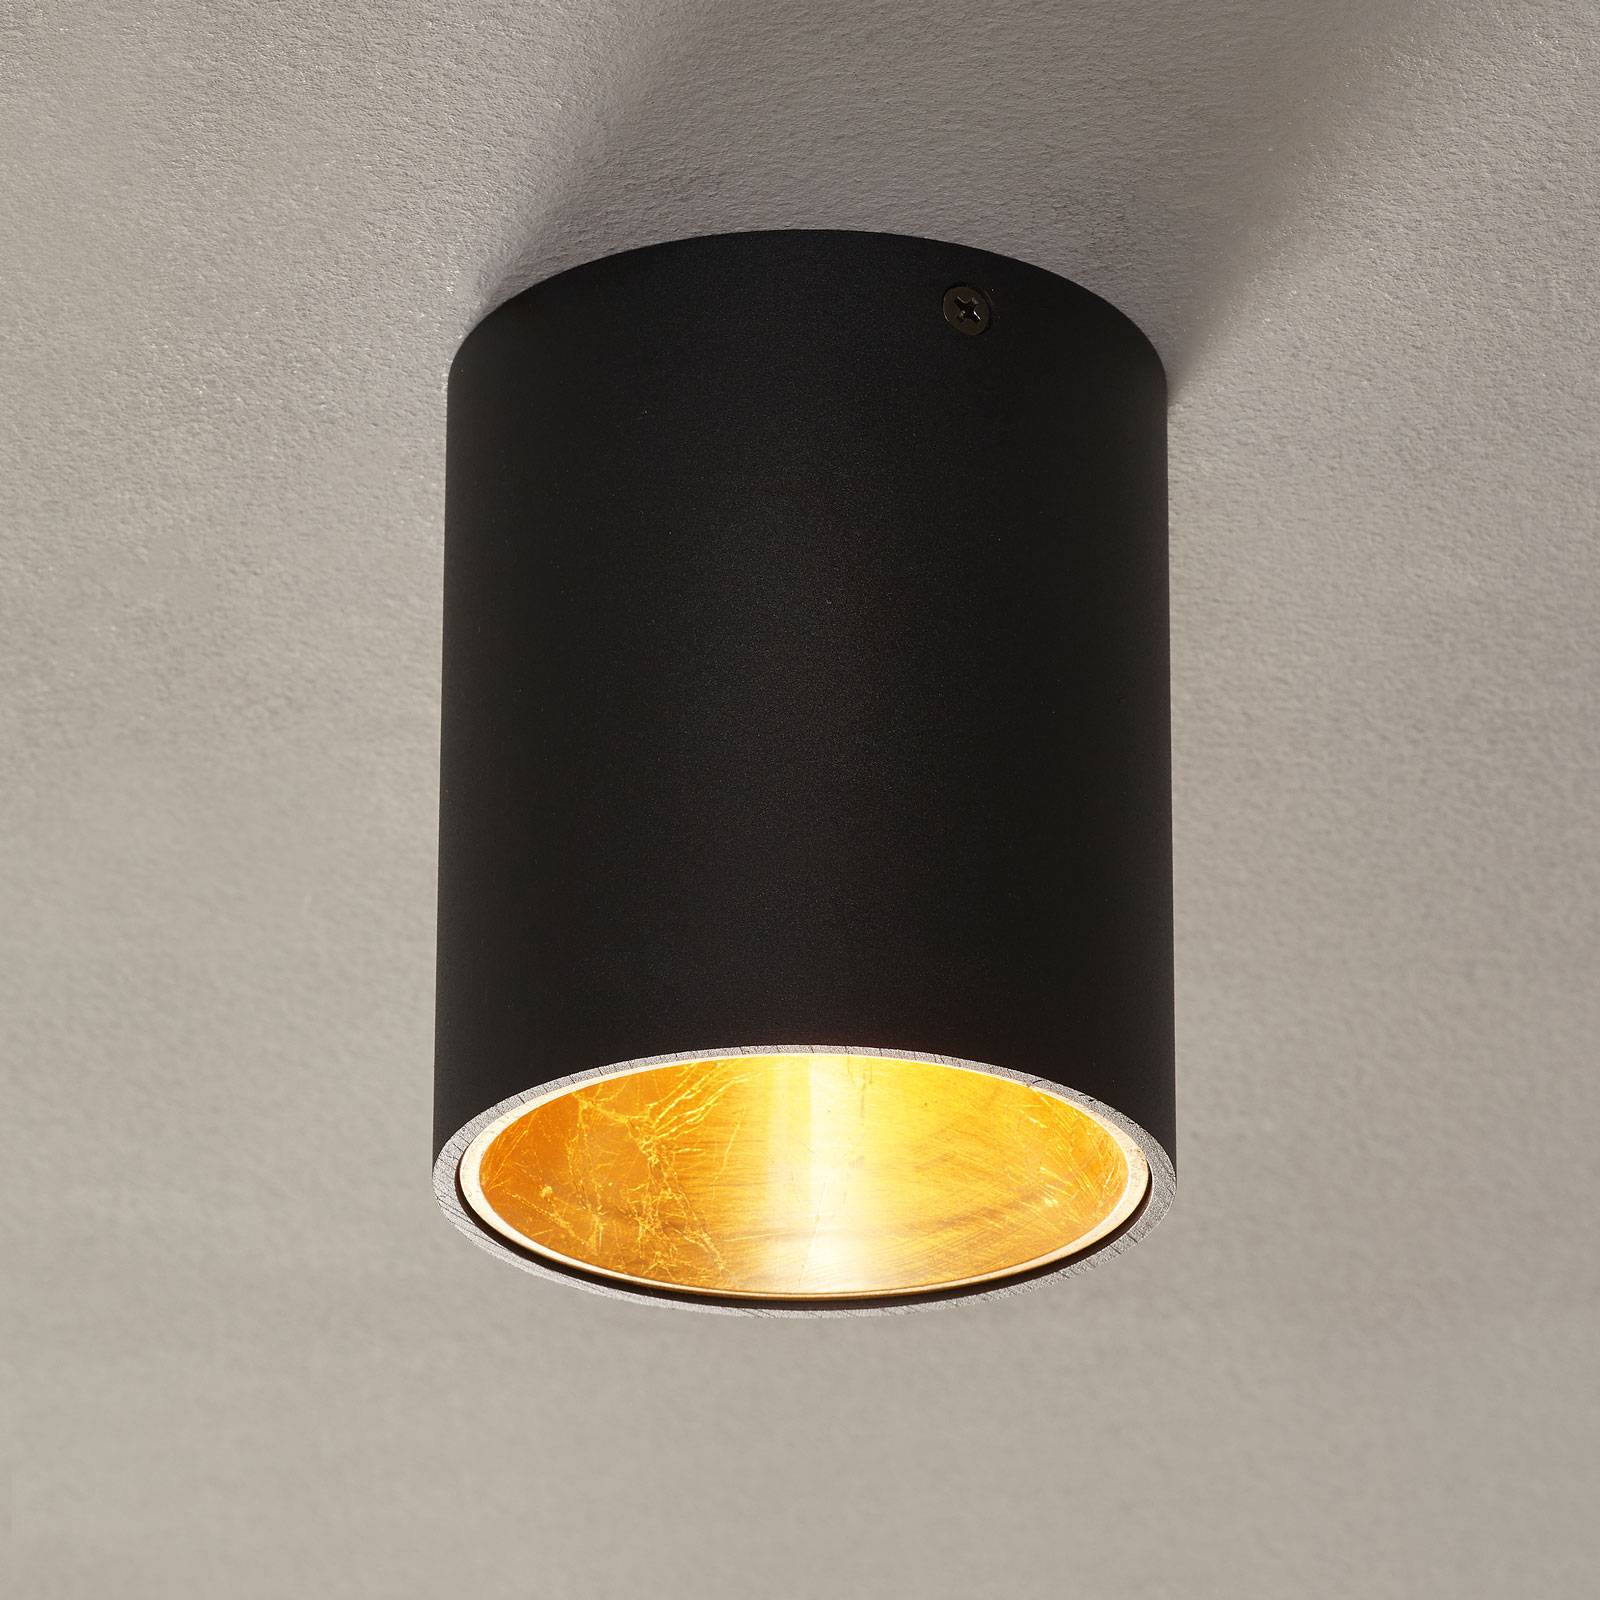 EGLO LED-Deckenlampe Polasso rund, schwarz-gold